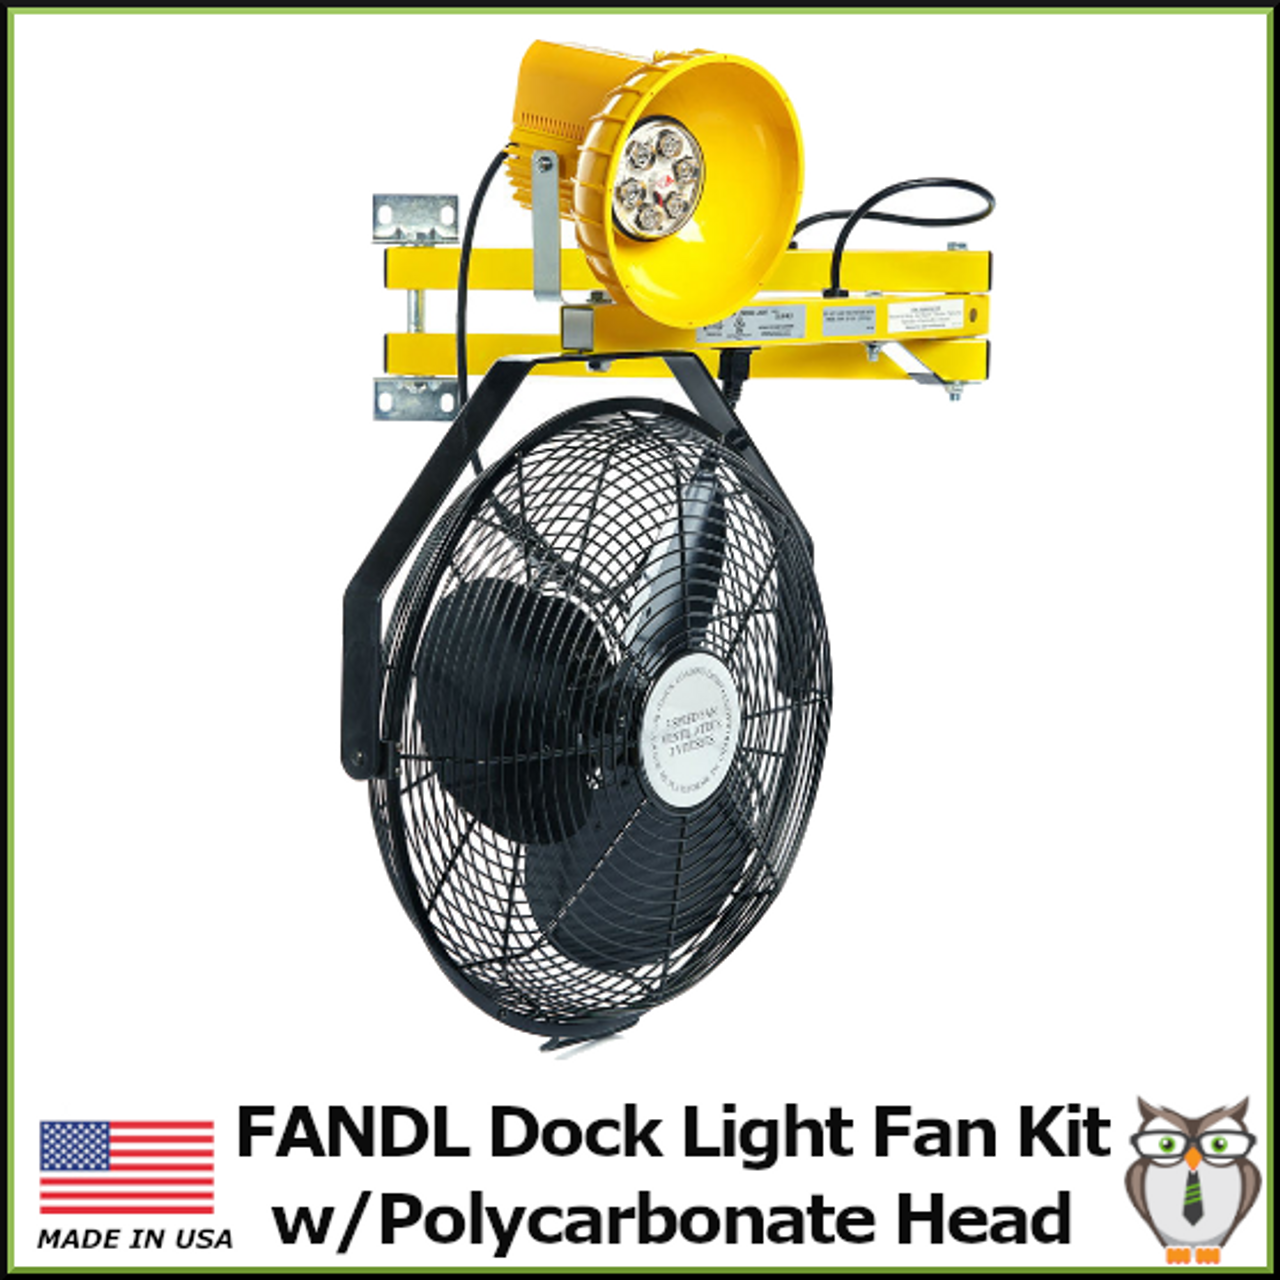 FANDL Dock Light Fan Kit with Polycarbonate Lamp Head